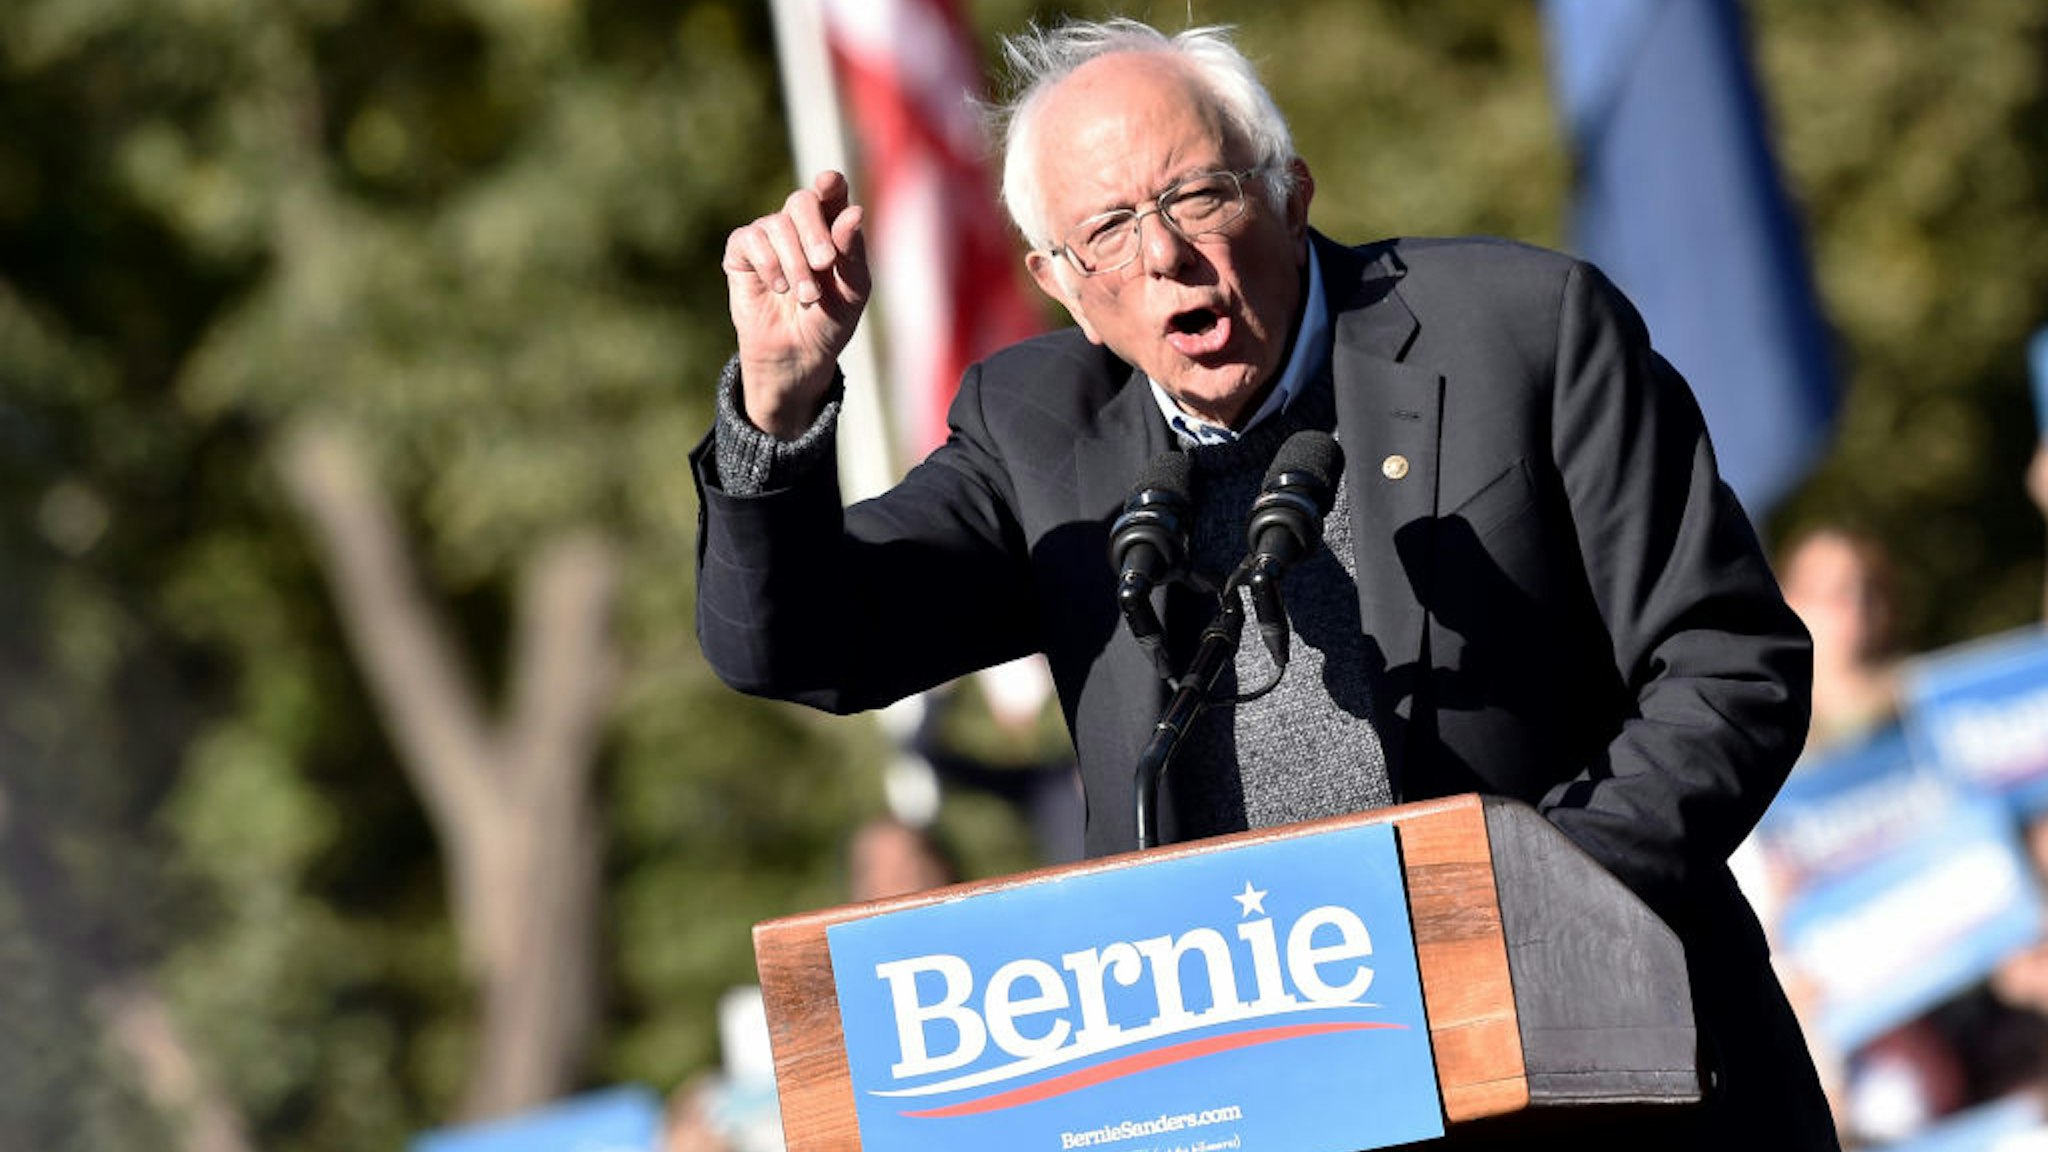 Bernie Sanders speaks during a campaign rally in Queensbridge Park